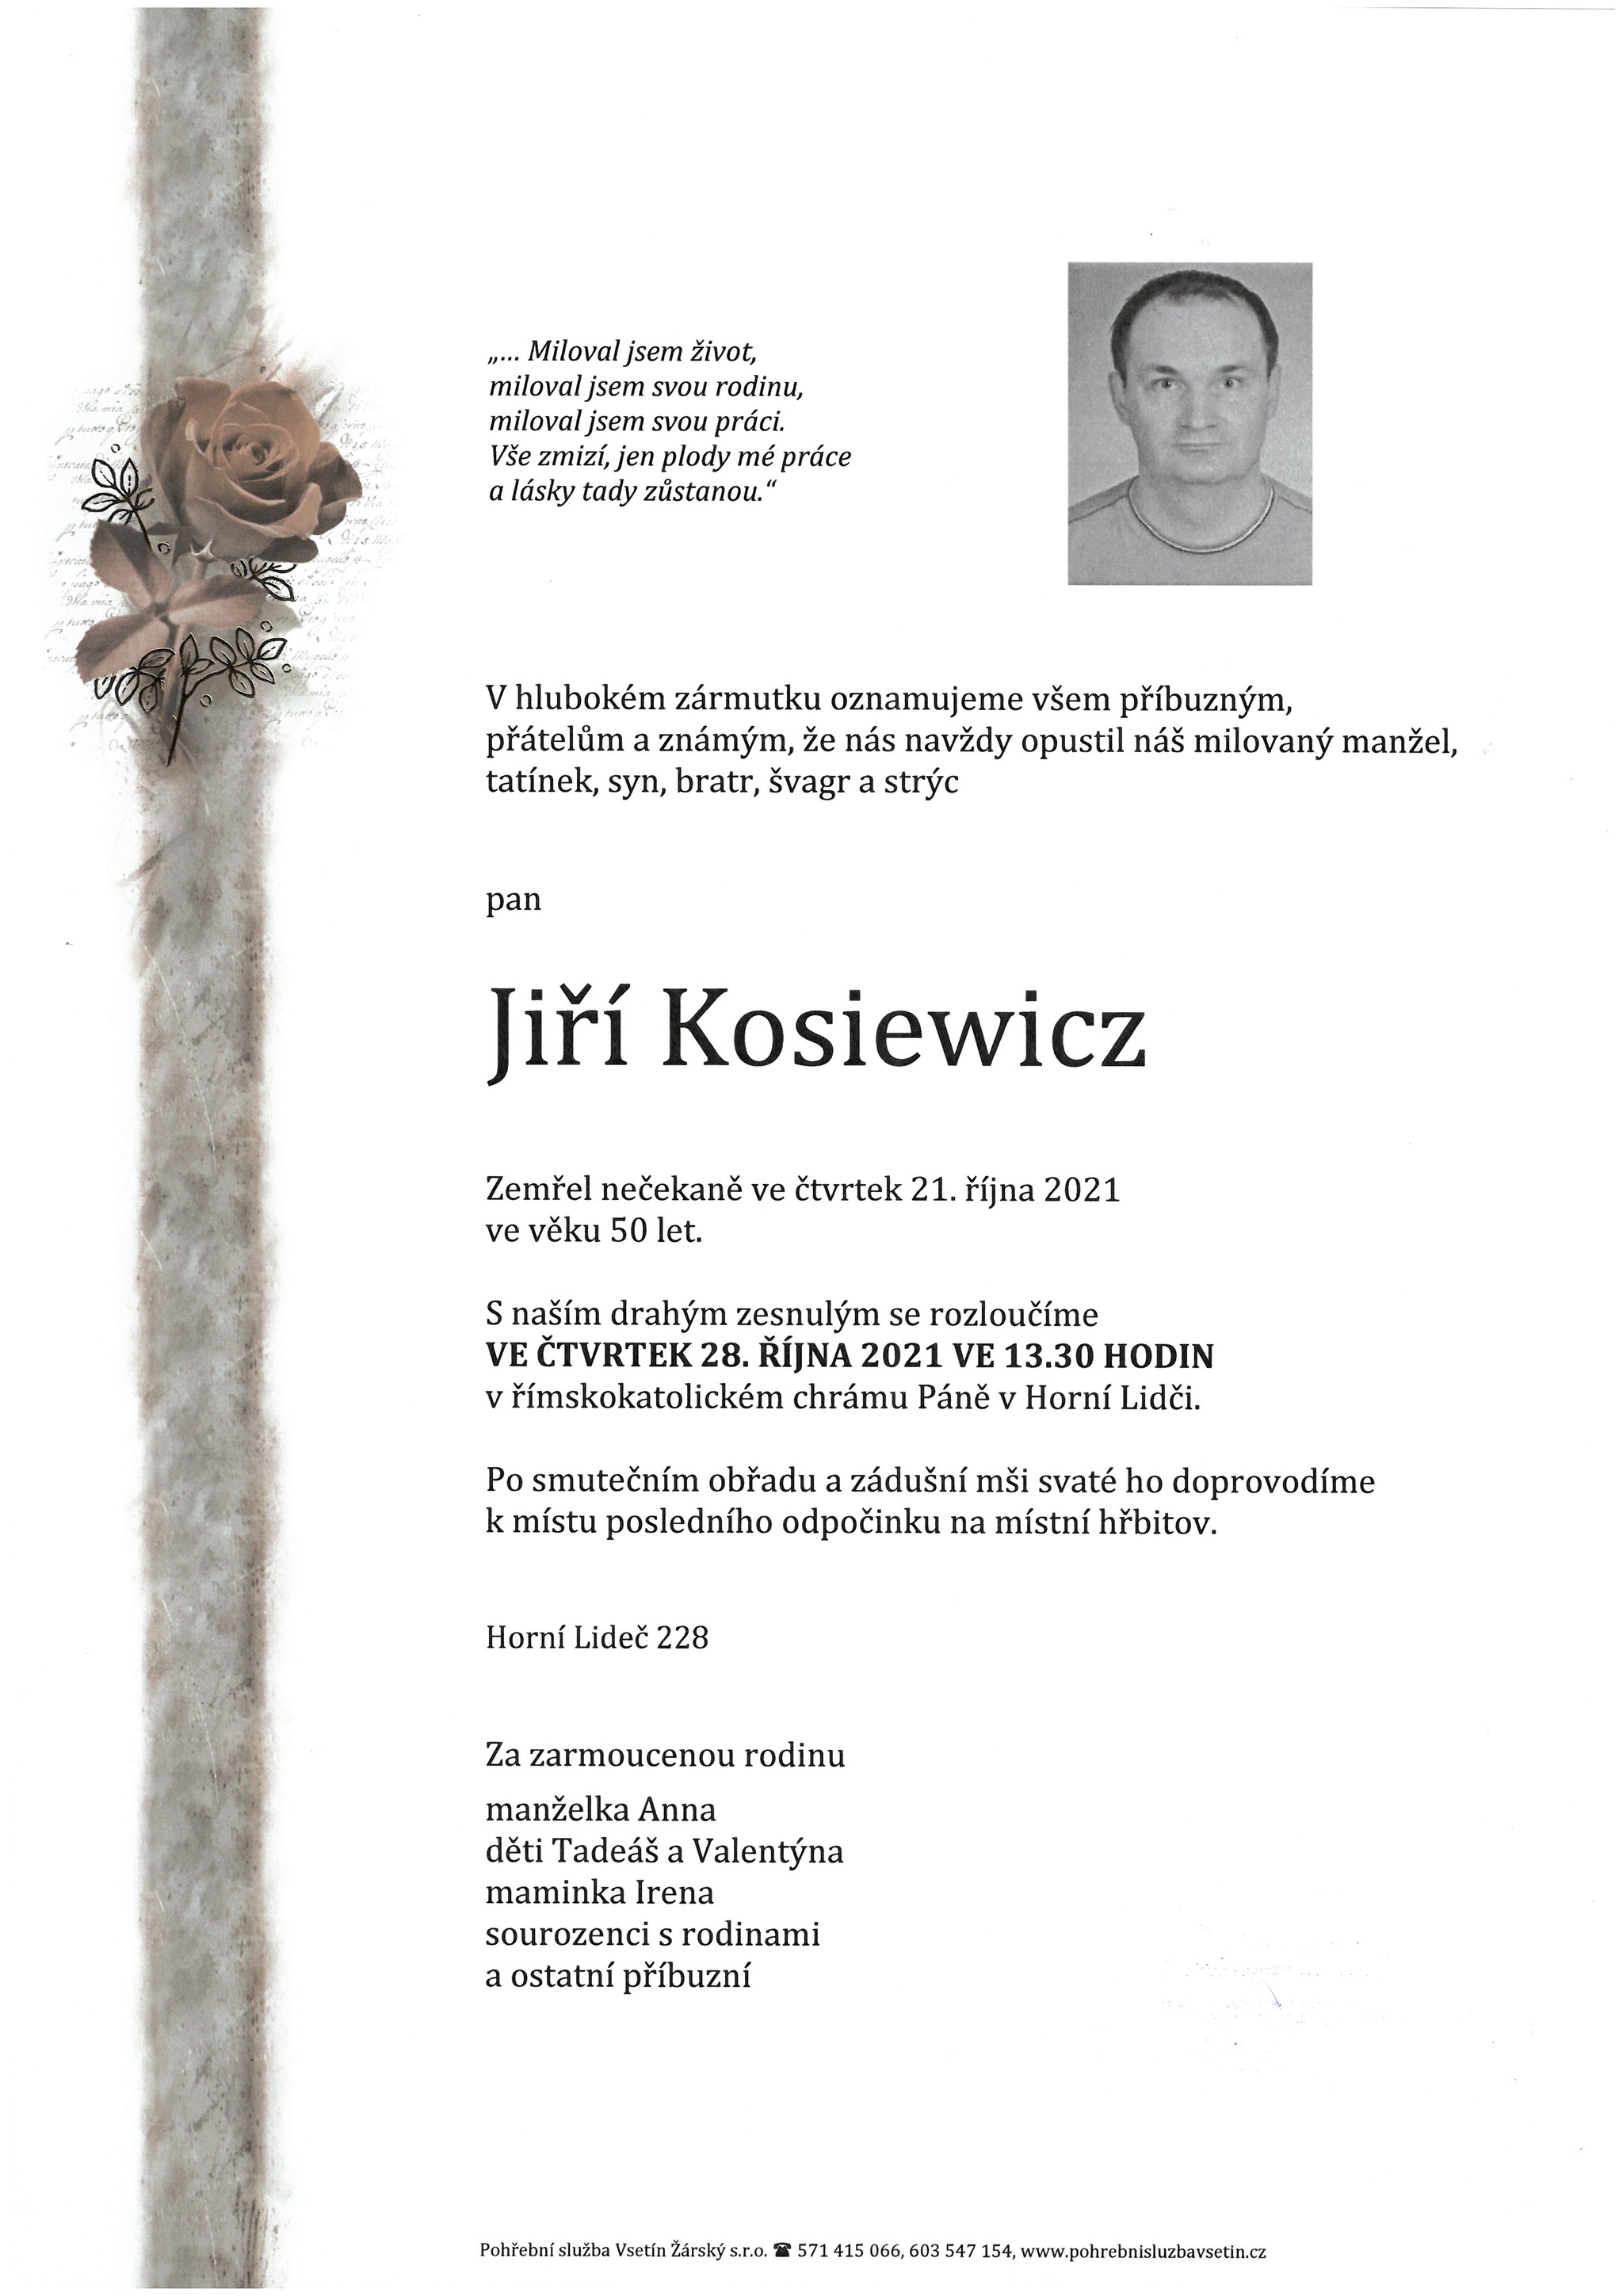 Jiří Kosiewicz